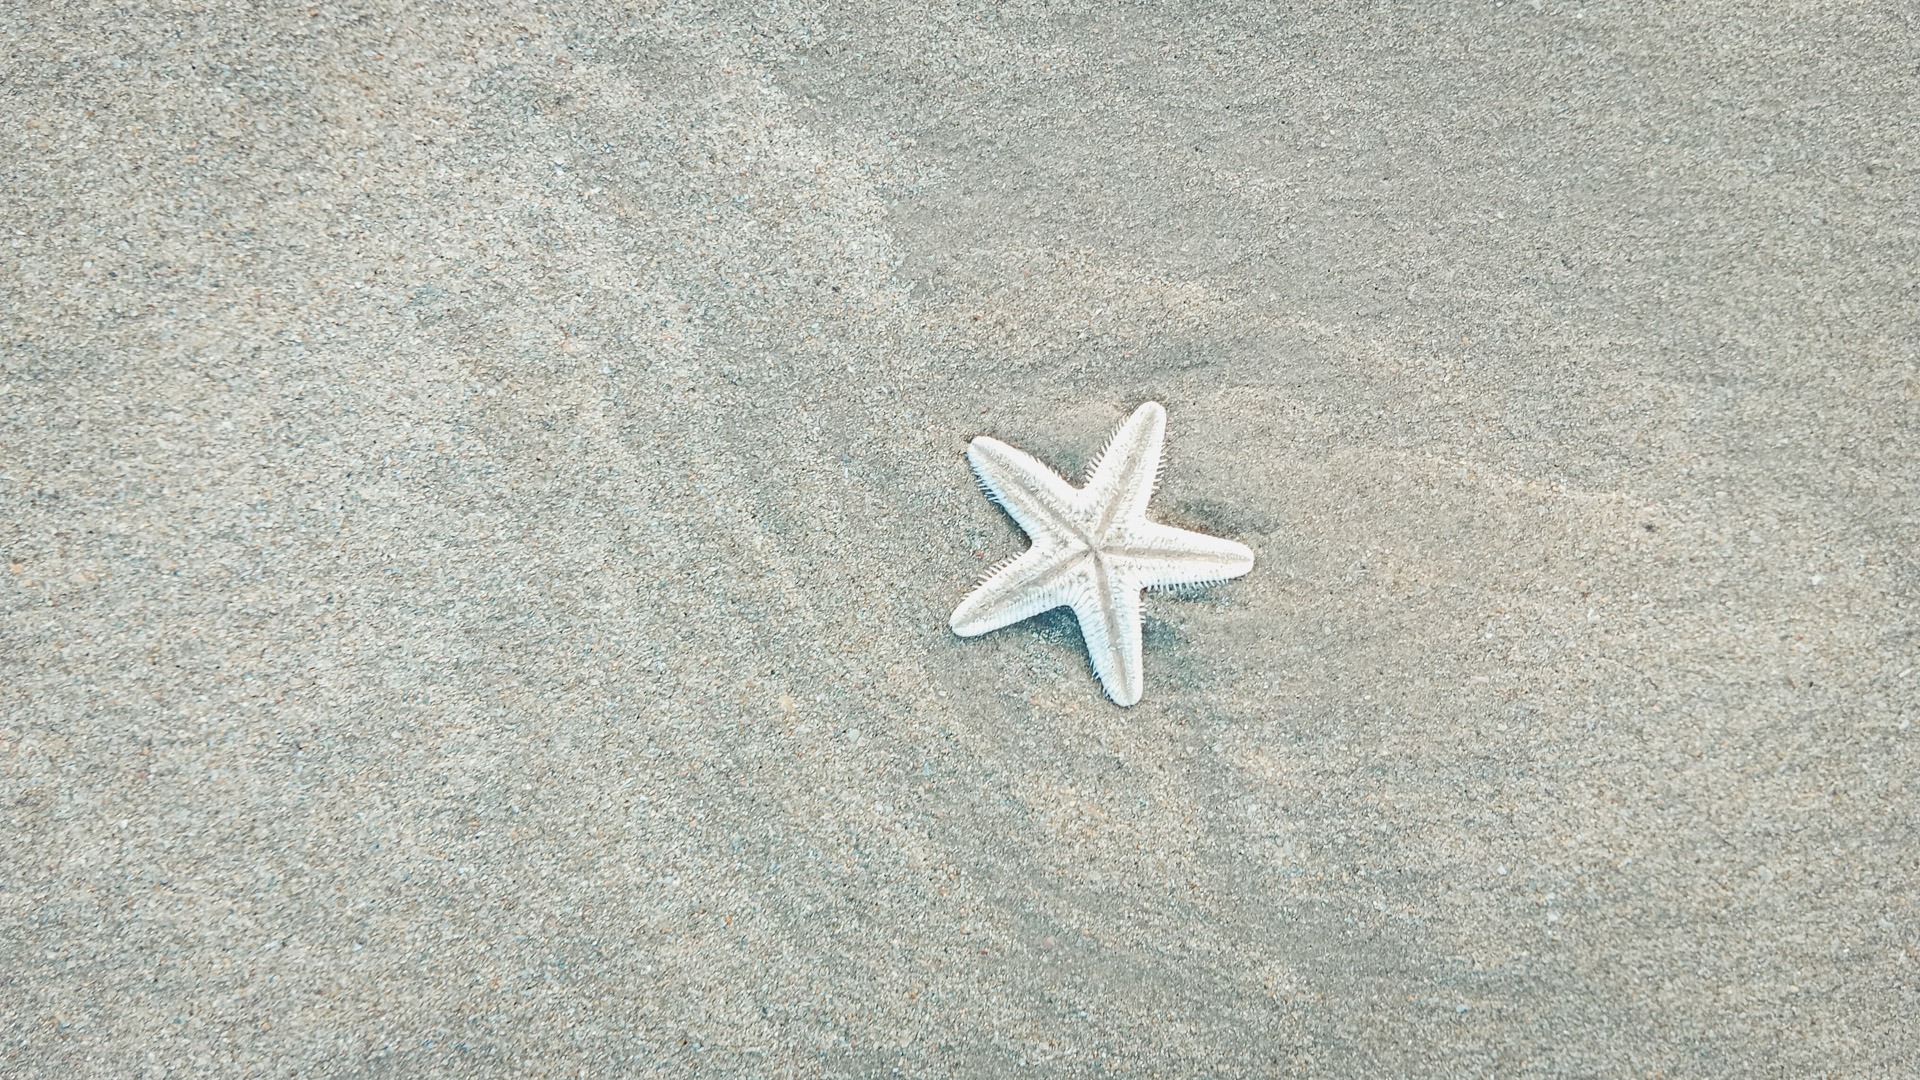 Мины были найдены на пляже курорта Шиле